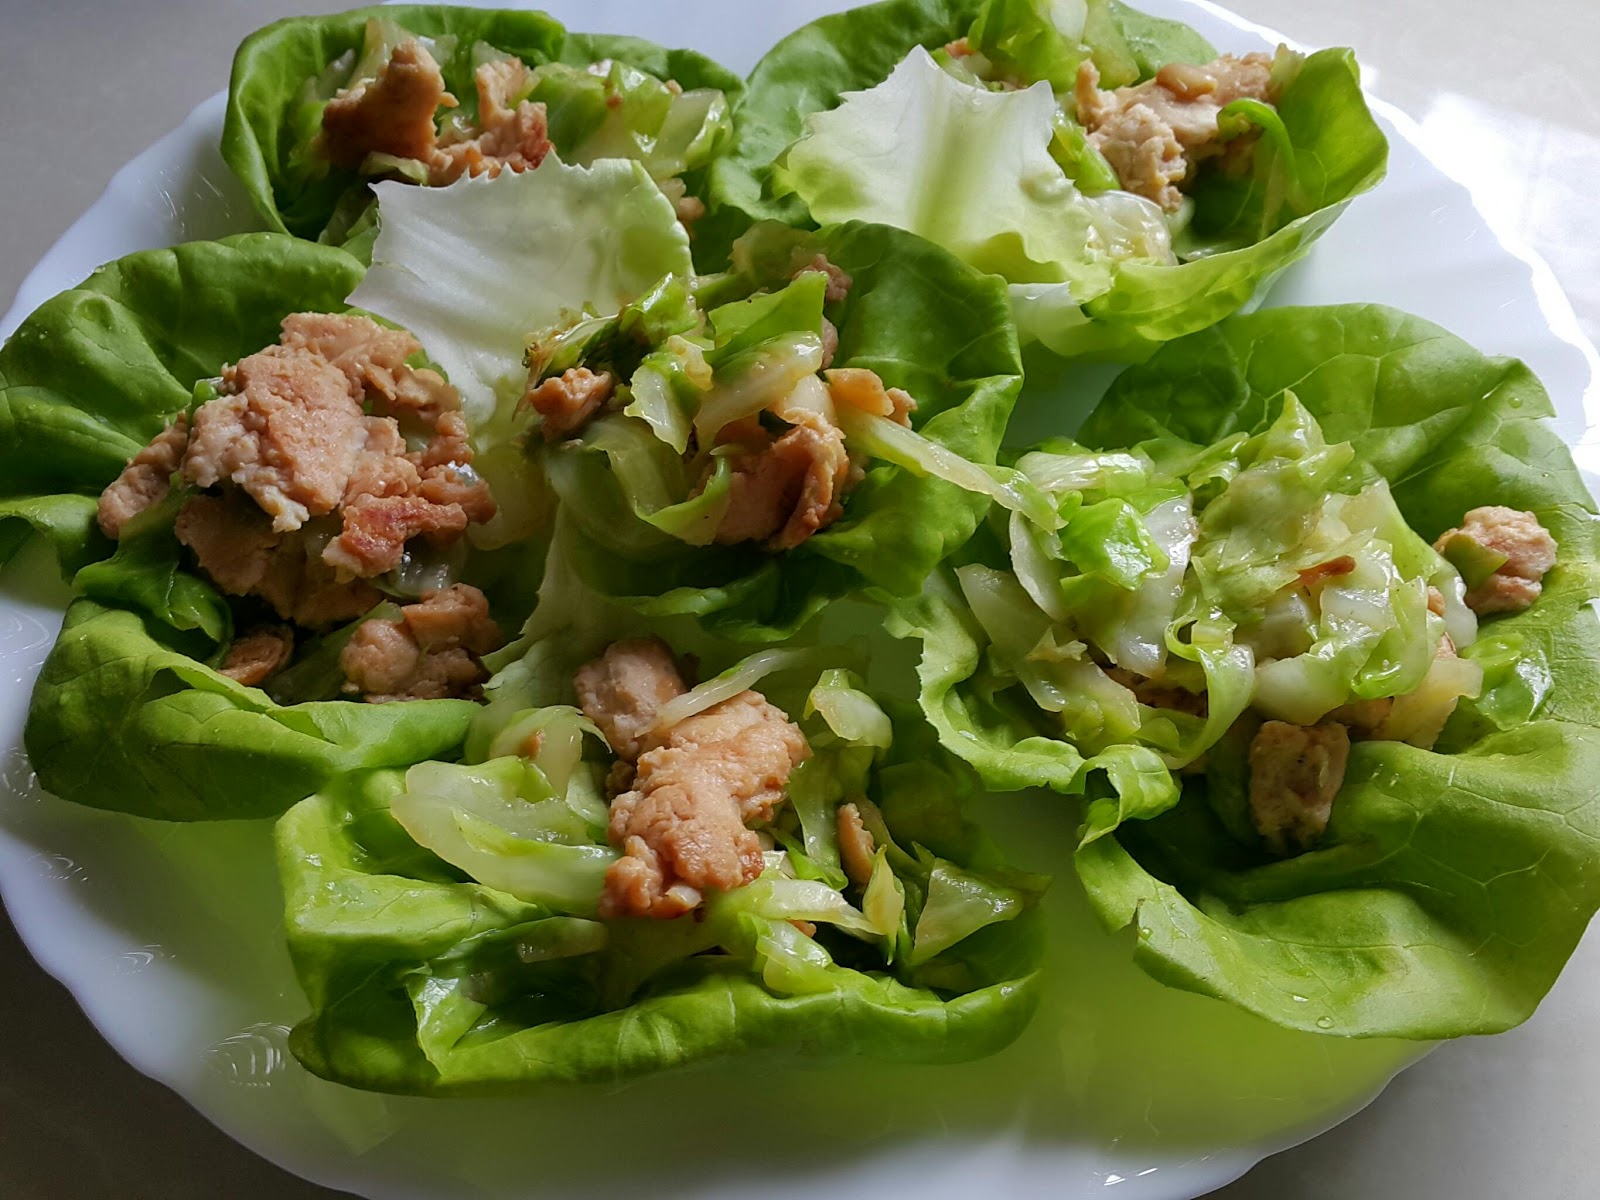 Cerita Yna: Resepi Sihat : Salad Gulung Ayam (Chicken 